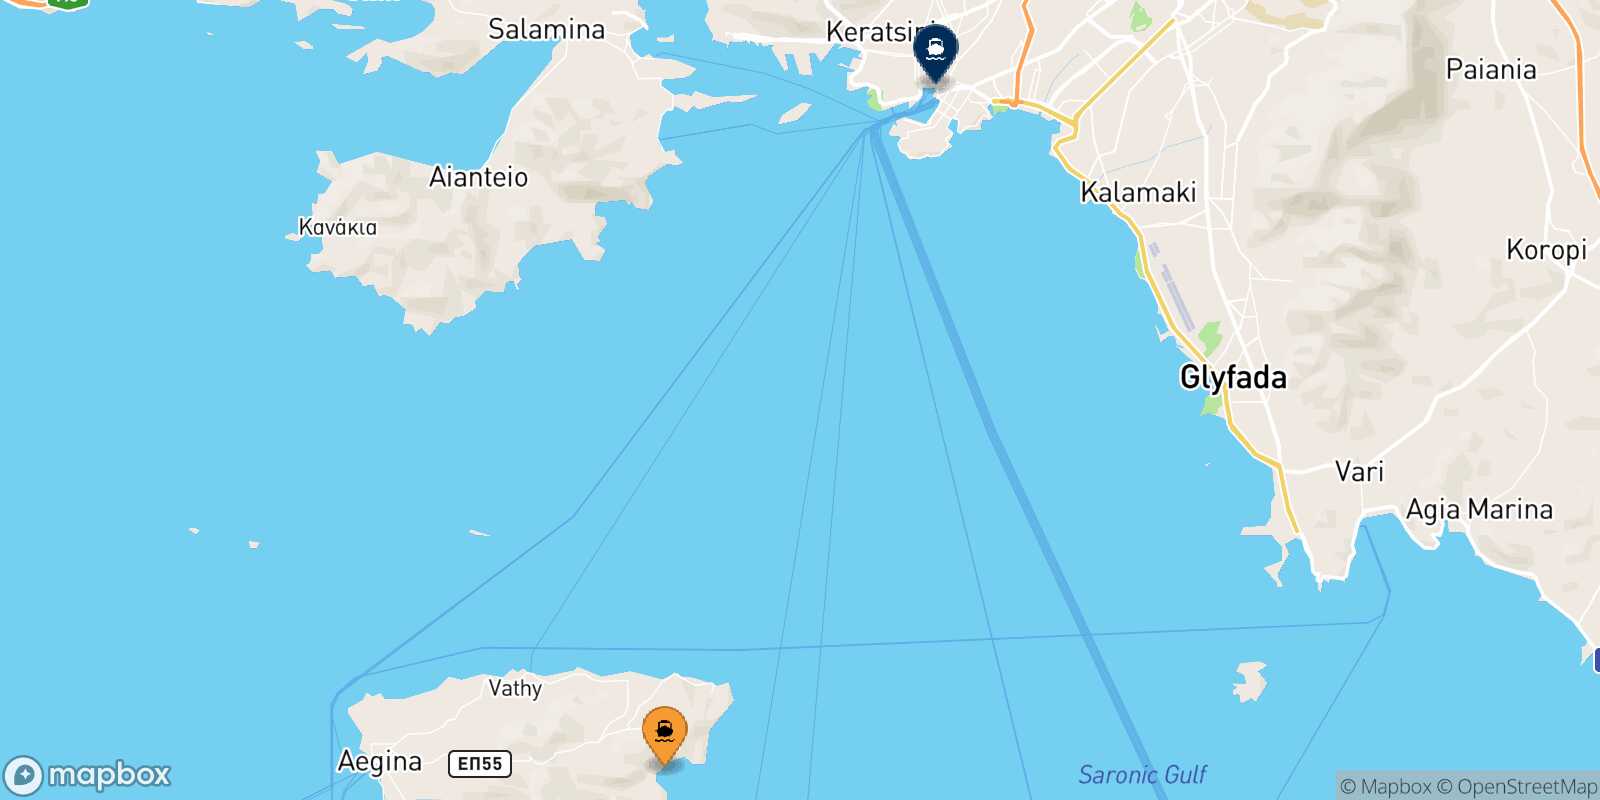 Agia Marina (Aegina) Piraeus route map